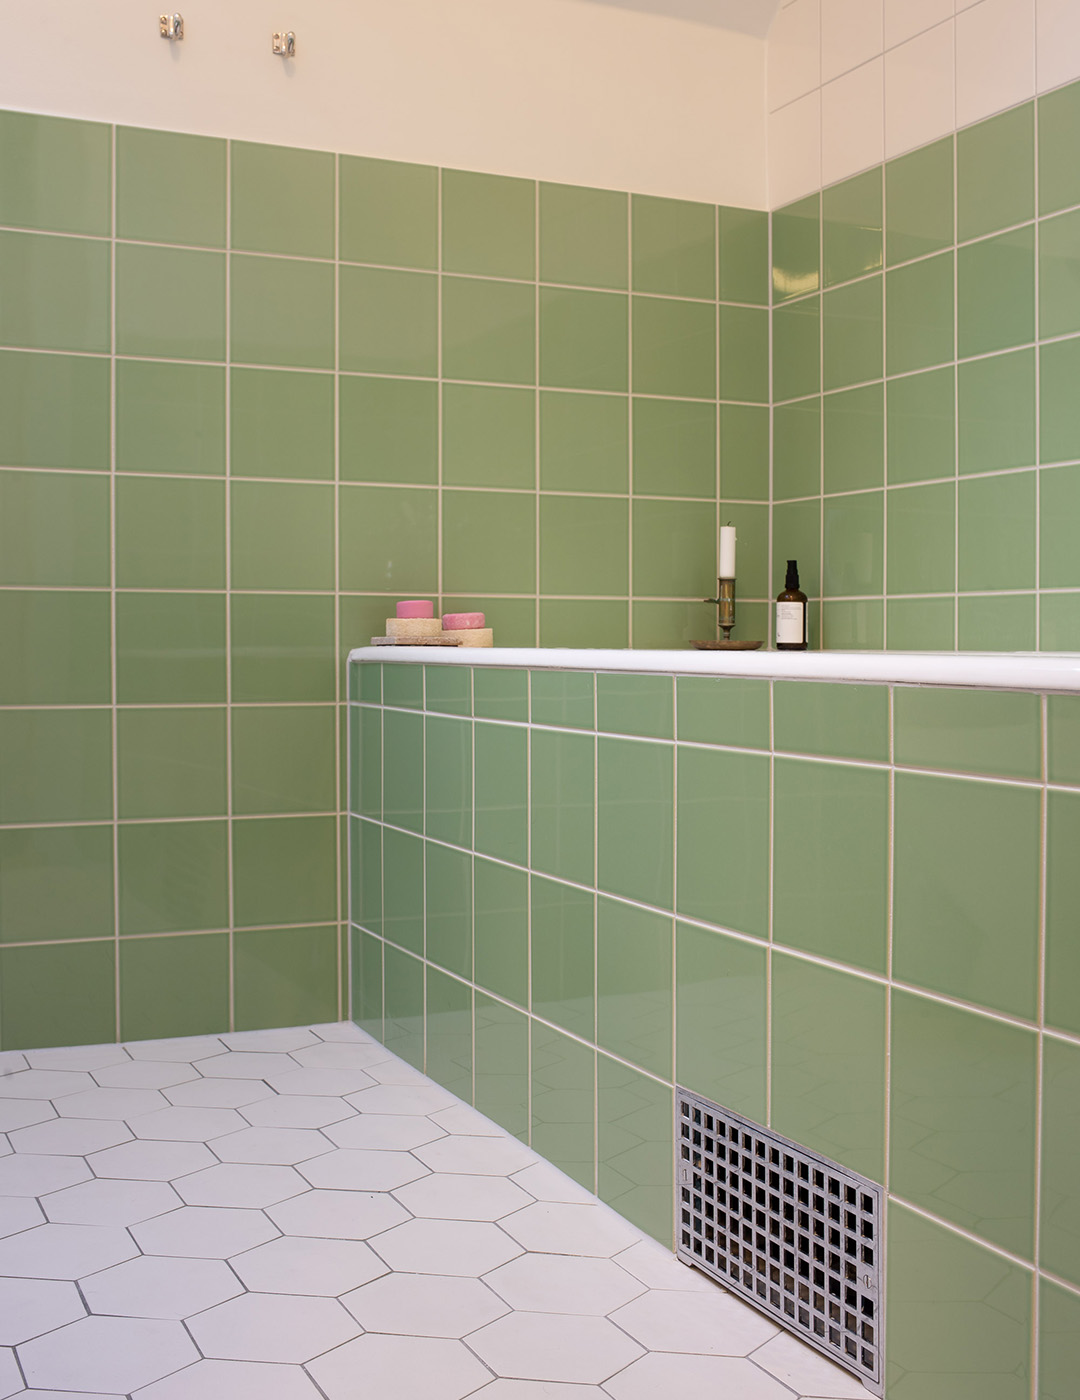 Funkisbadrum med inbyggt badkar med ljusgrönt kvadratiskt kakel satt i rakt förband. Klinkergolv av vita hexagonformade plattor.